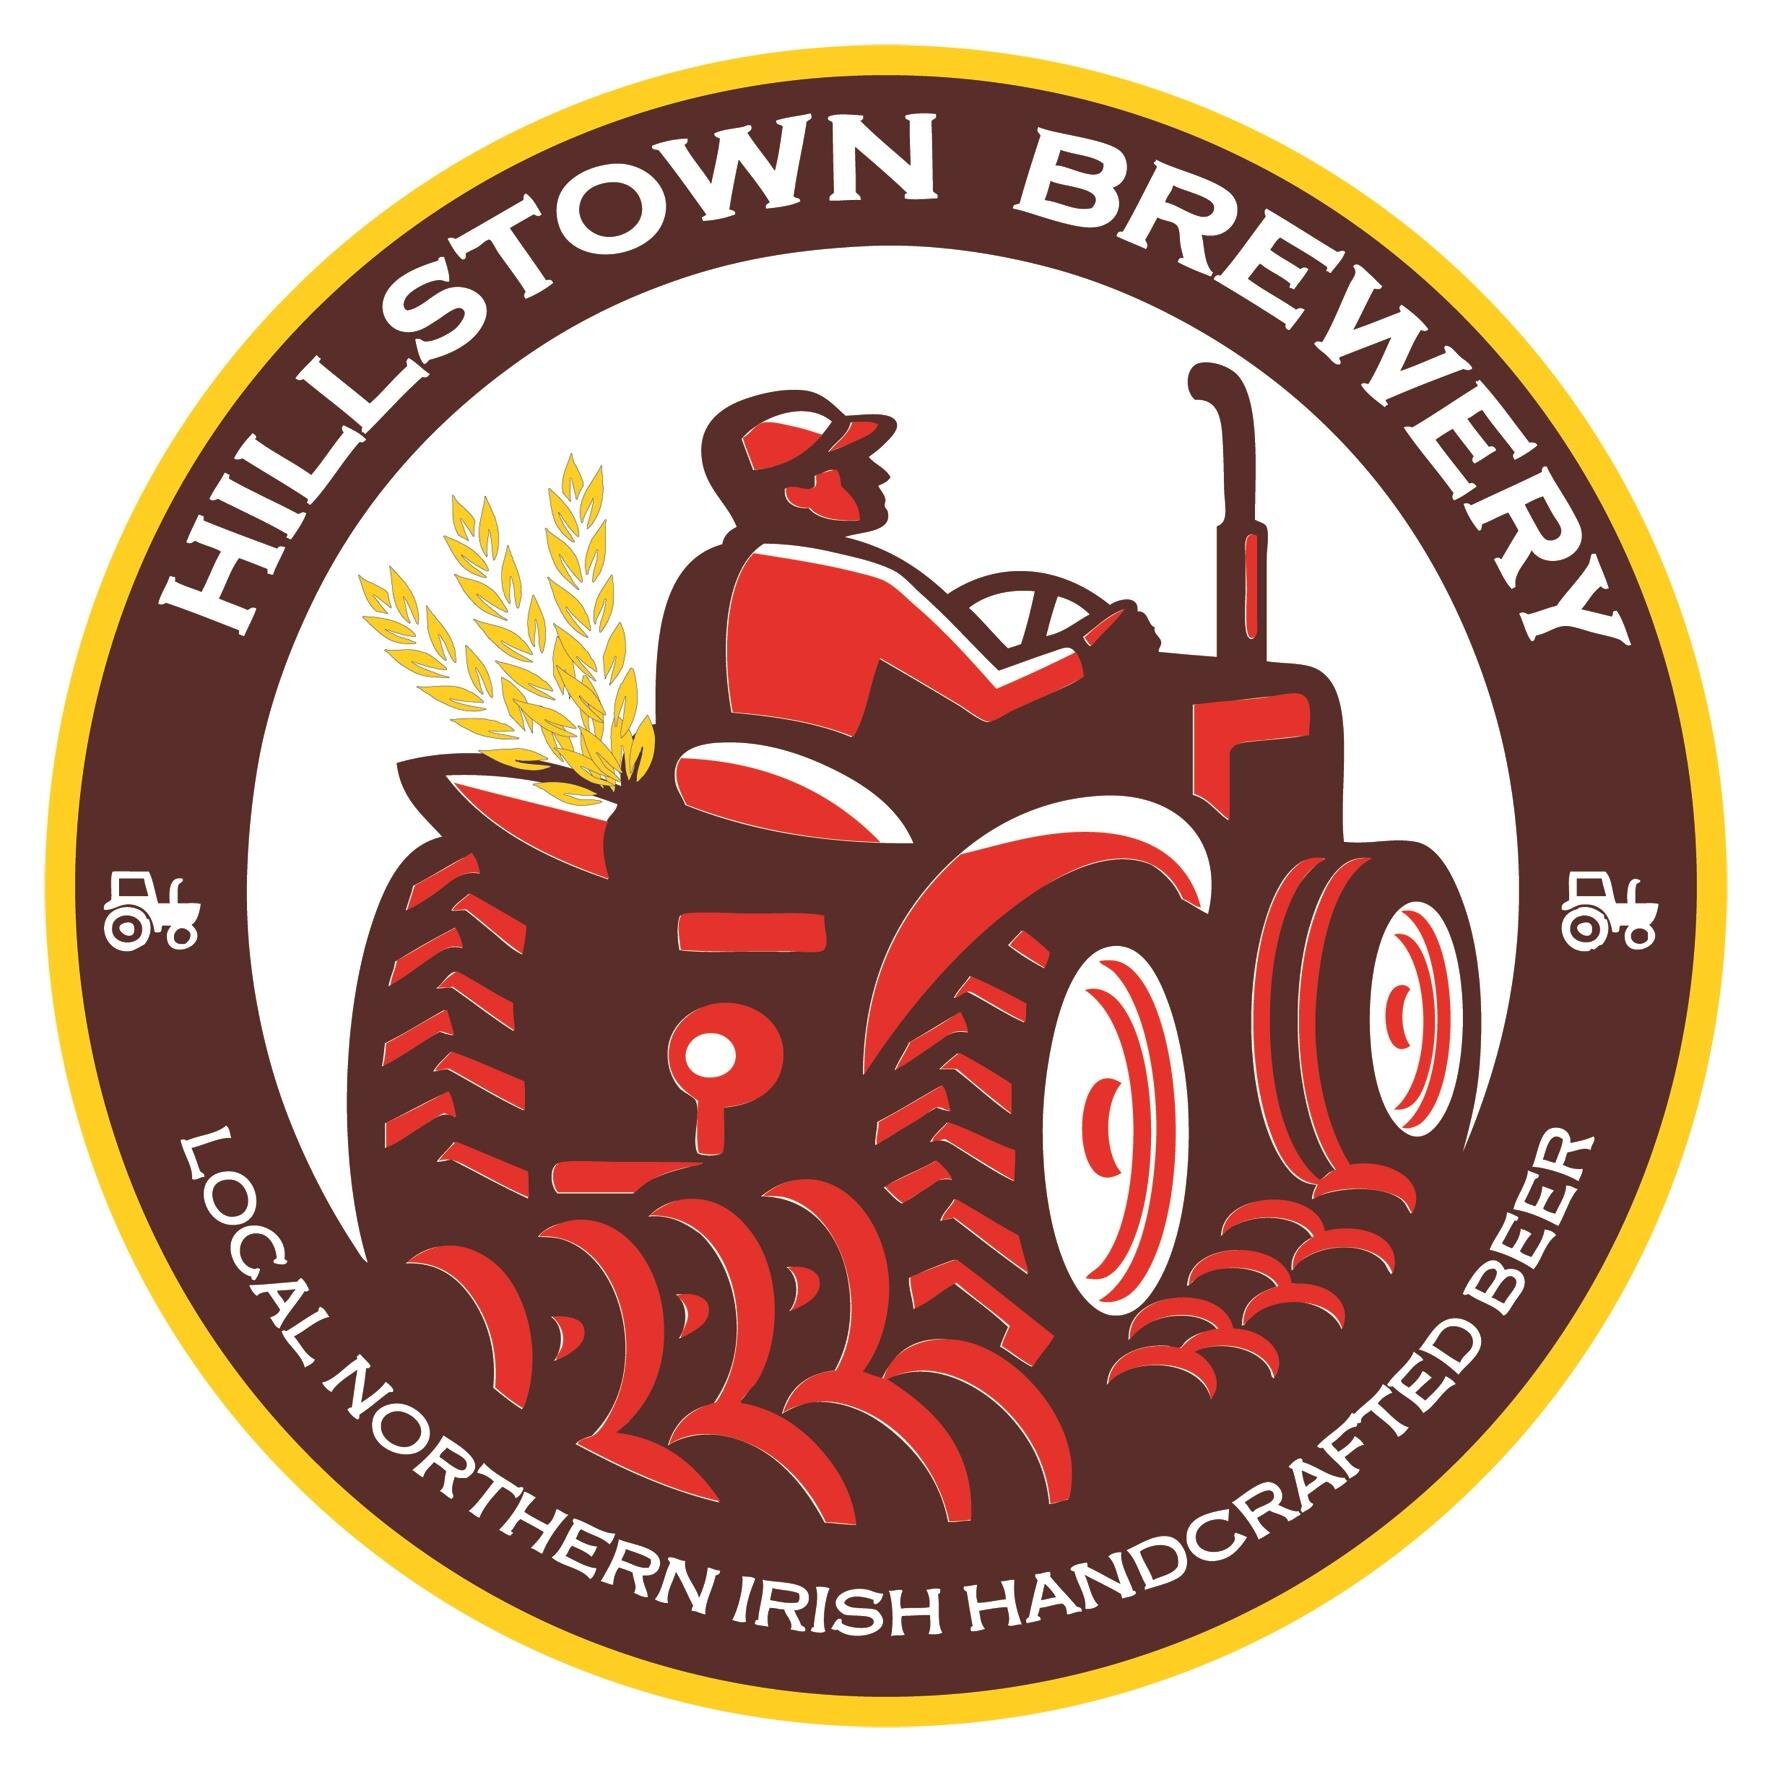 Hillstown Brewery